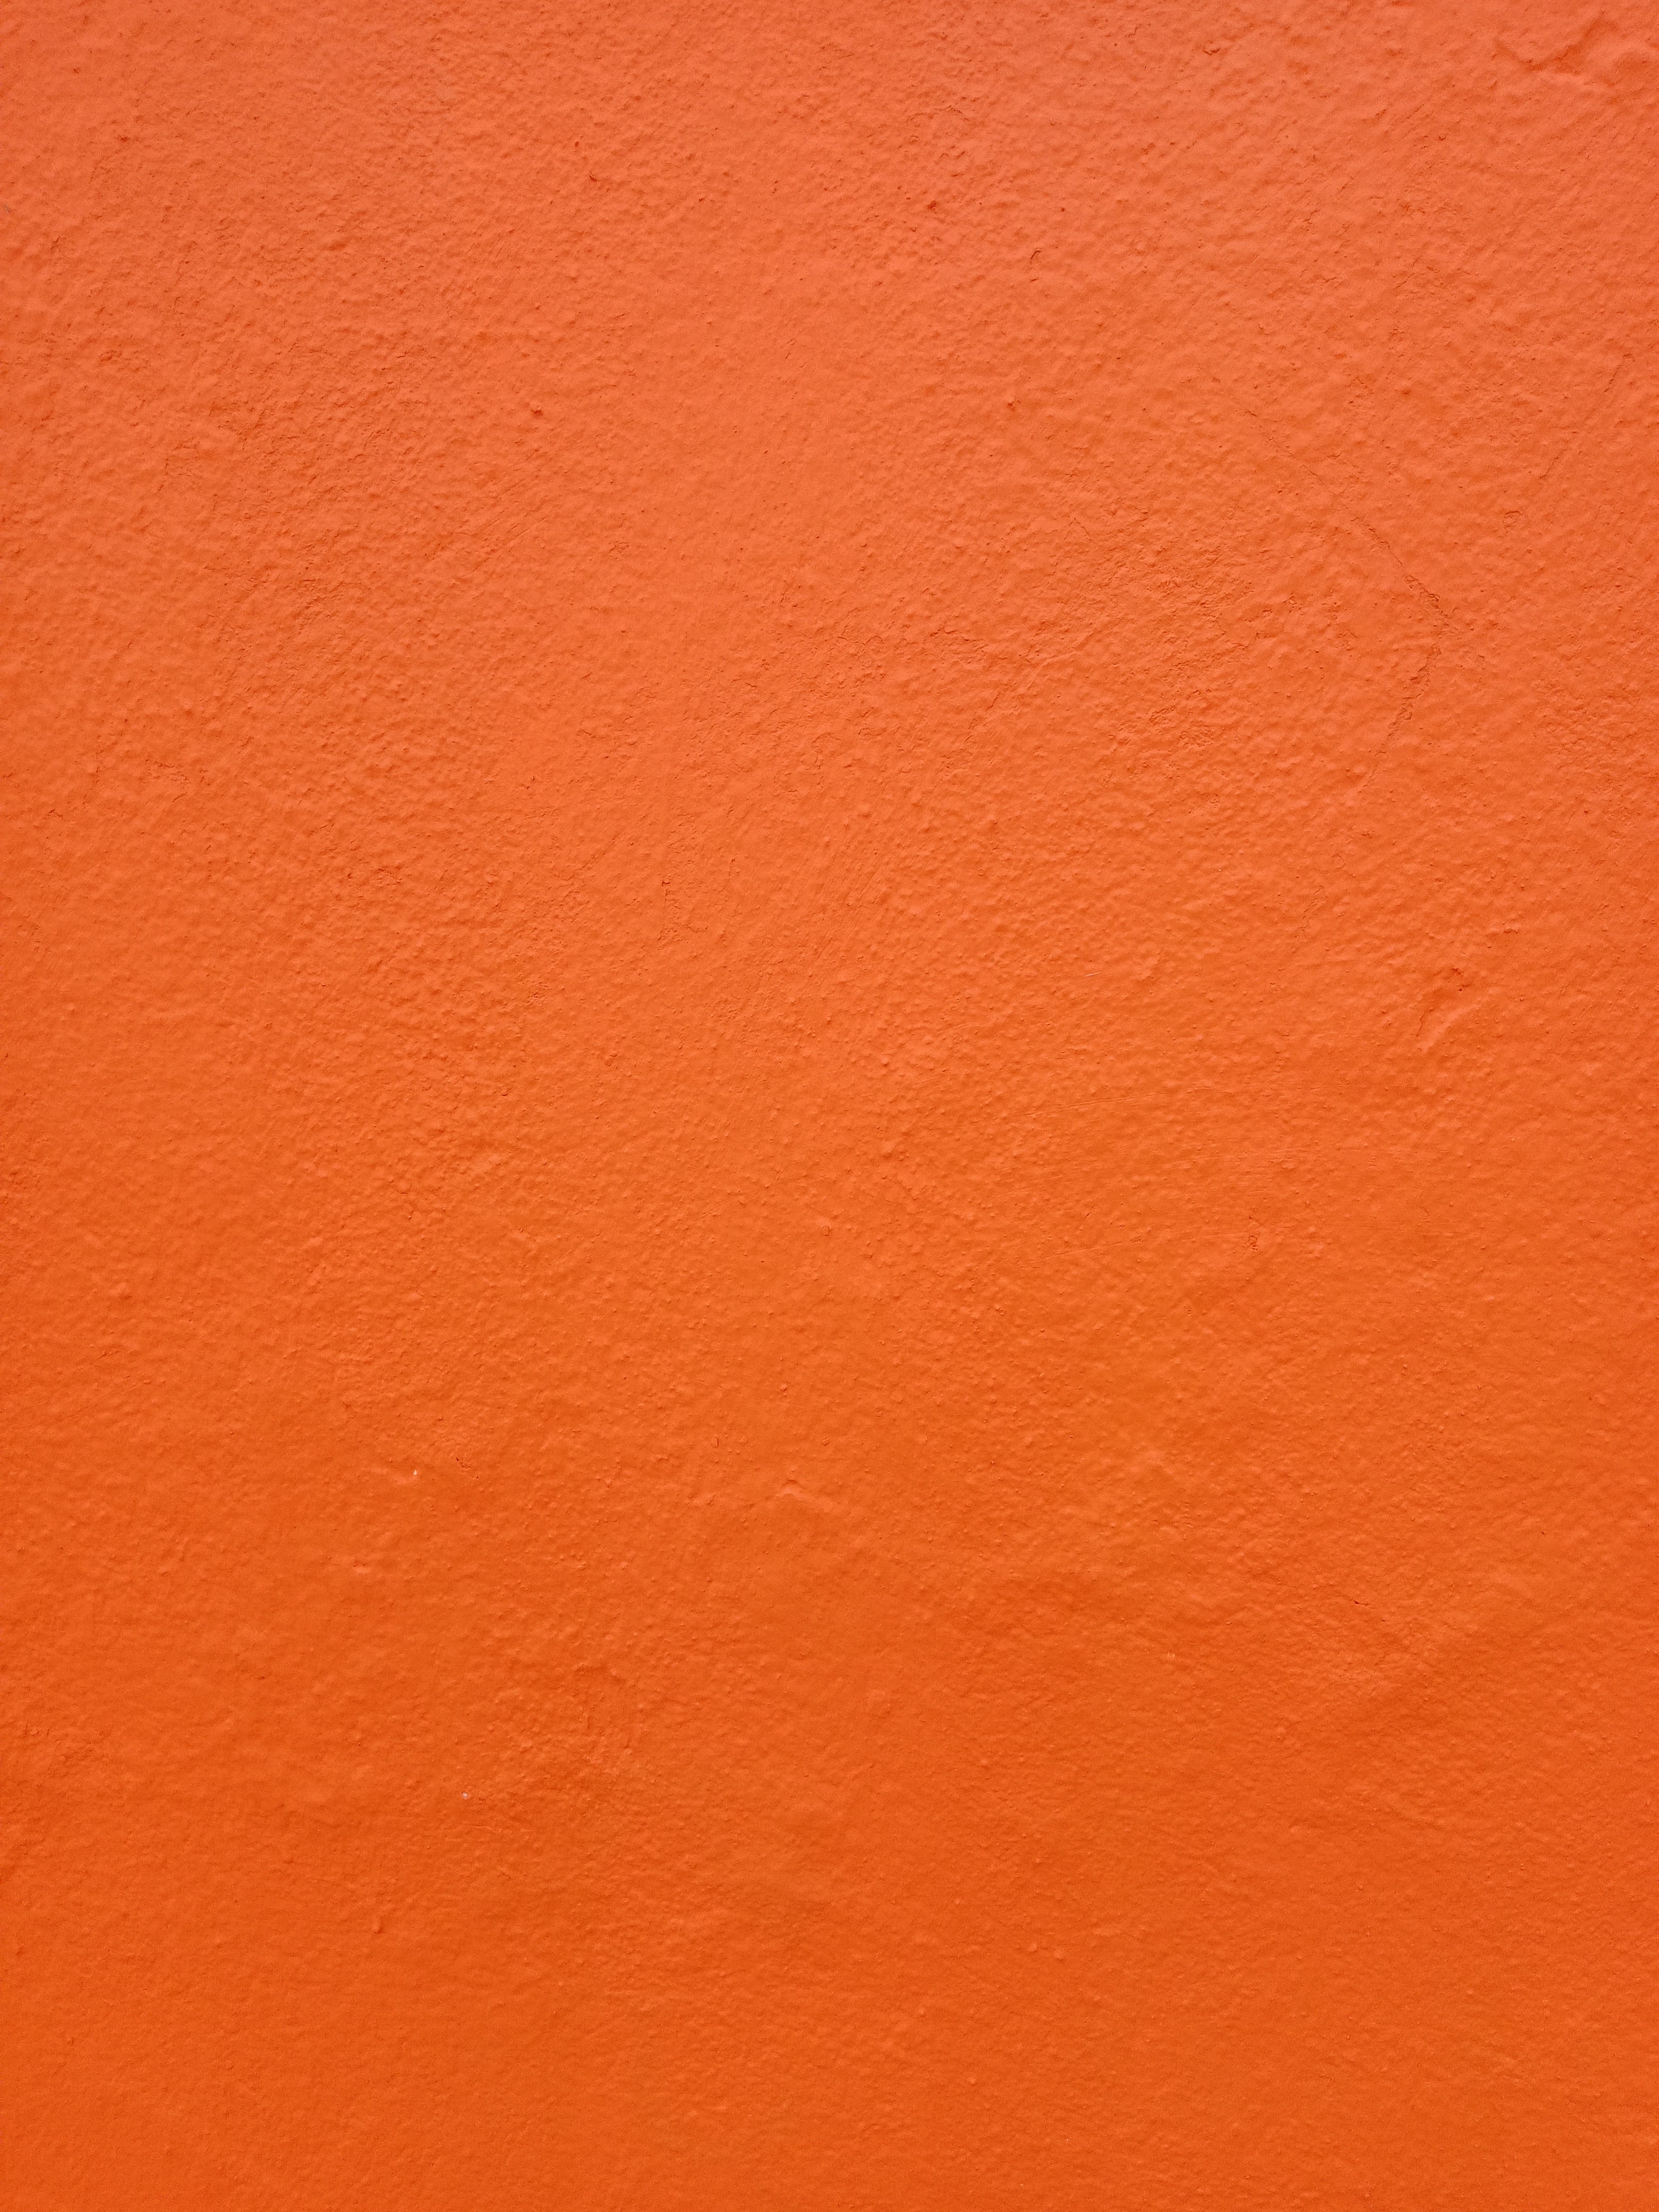 dark orange vartical background